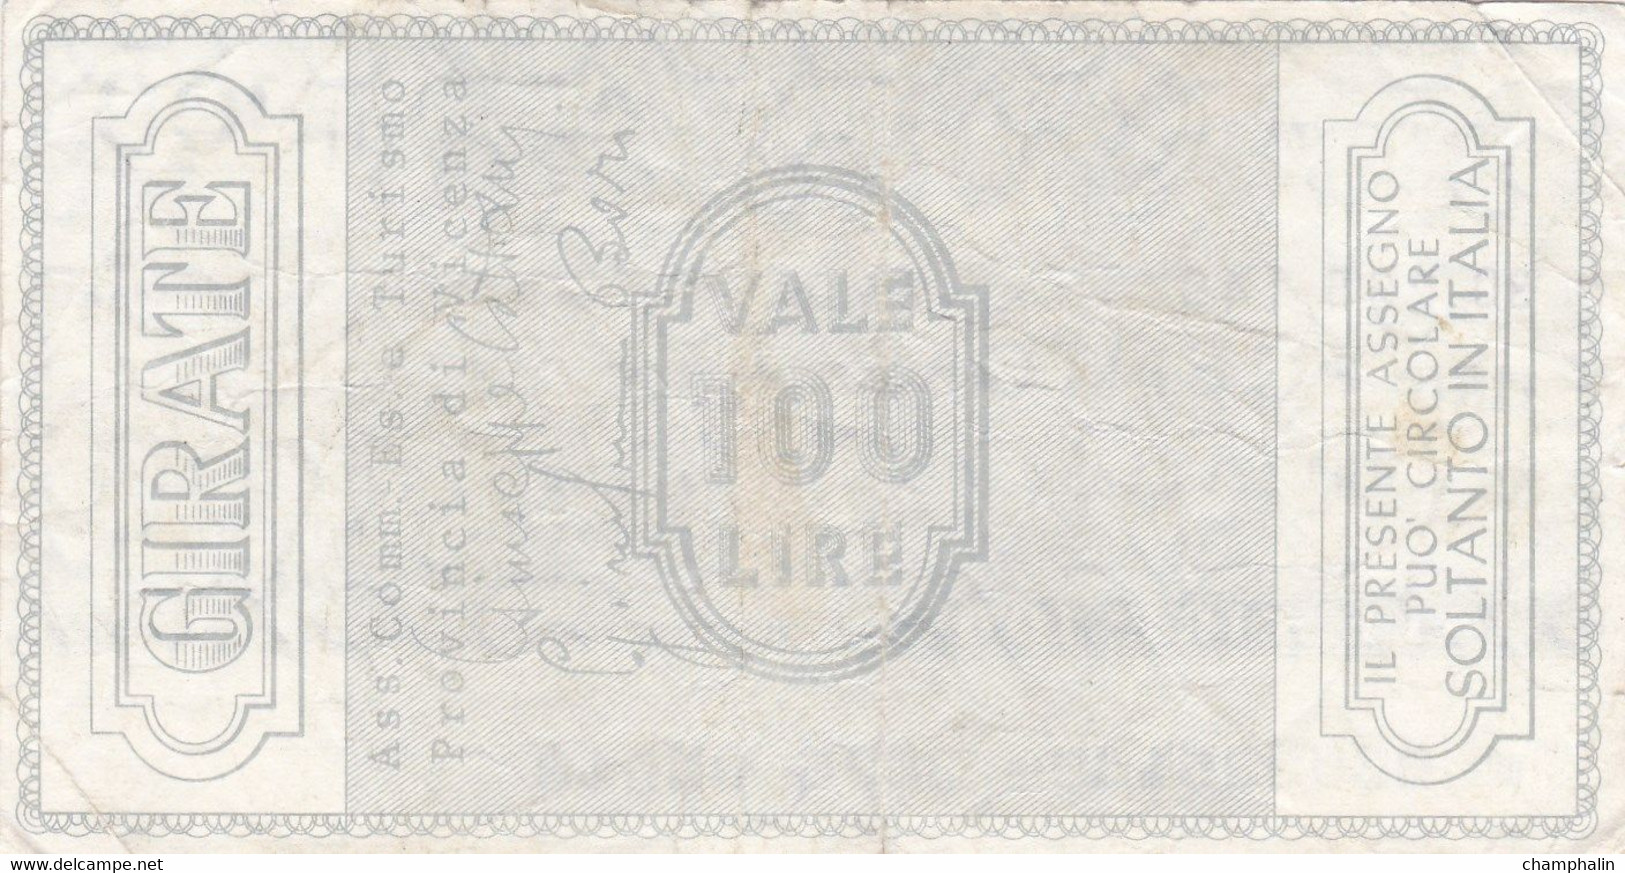 Italie - Billet De 100 Lire - Banco Cattolica Del Veneto - 4 Août 1976 - Emissions Provisionnelles - Chèque - [ 4] Vorläufige Ausgaben